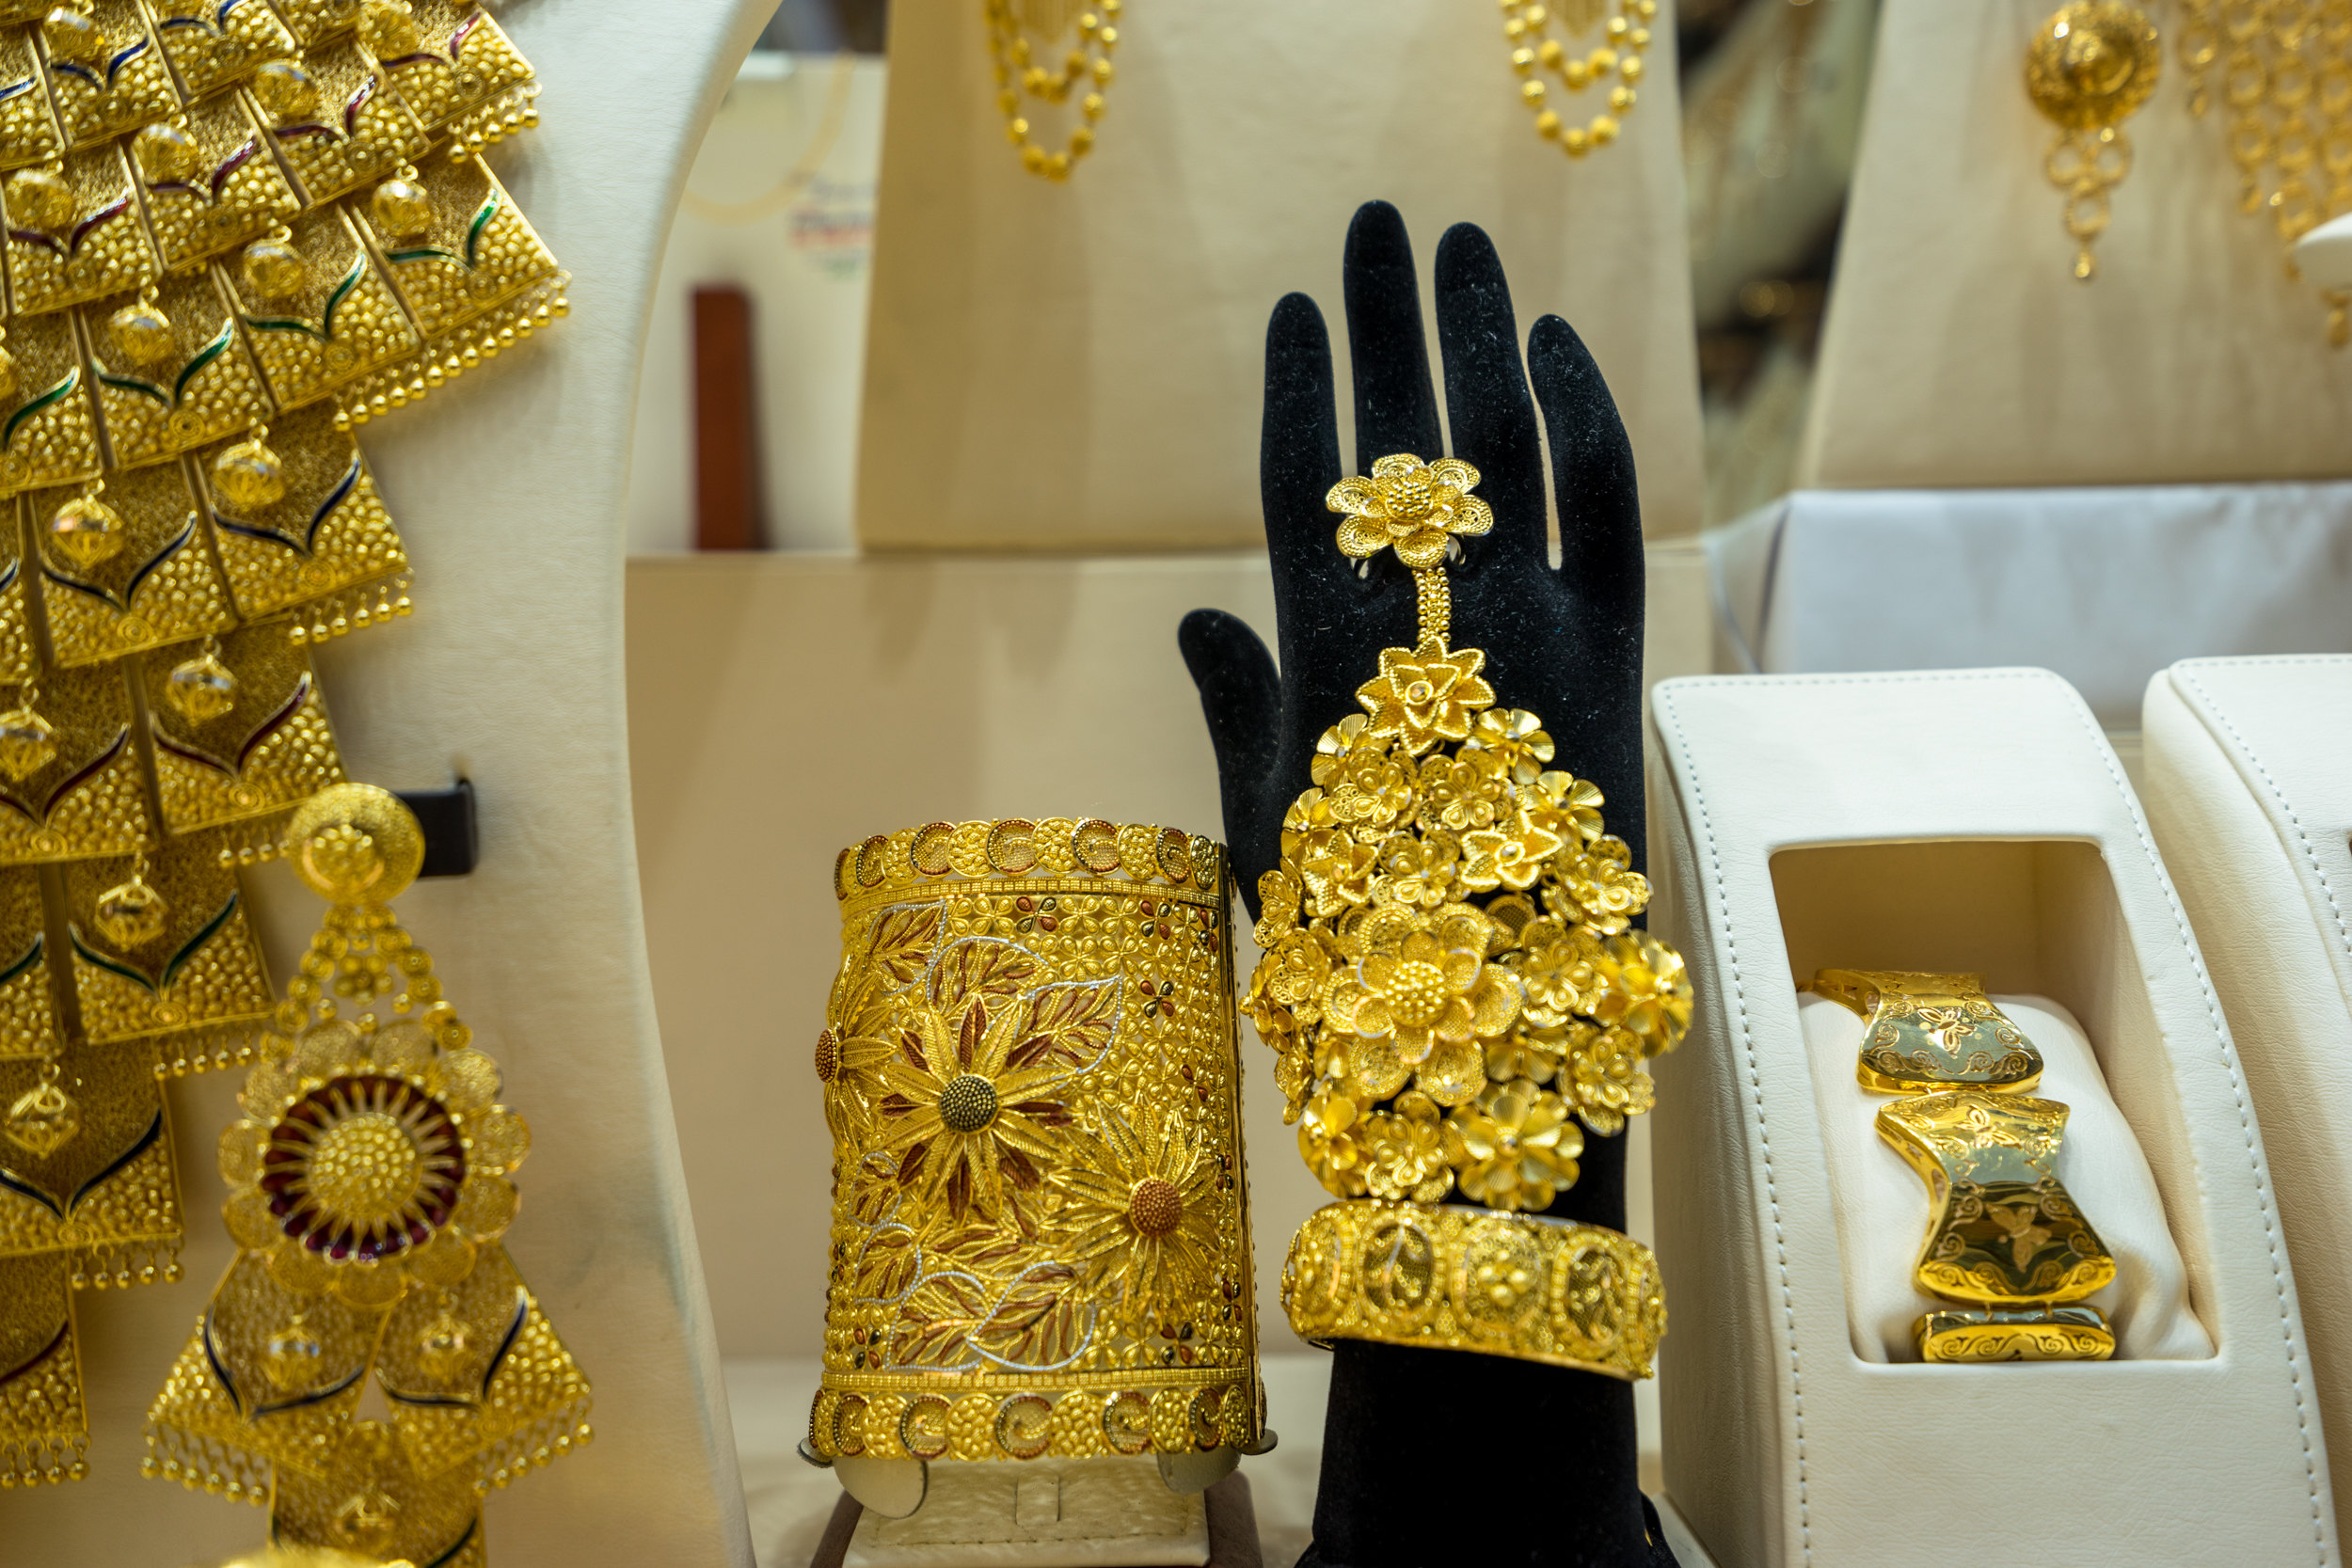 【携程攻略】迪拜黄金市场购物,这里是世界上最大的黄金交易市场,每个